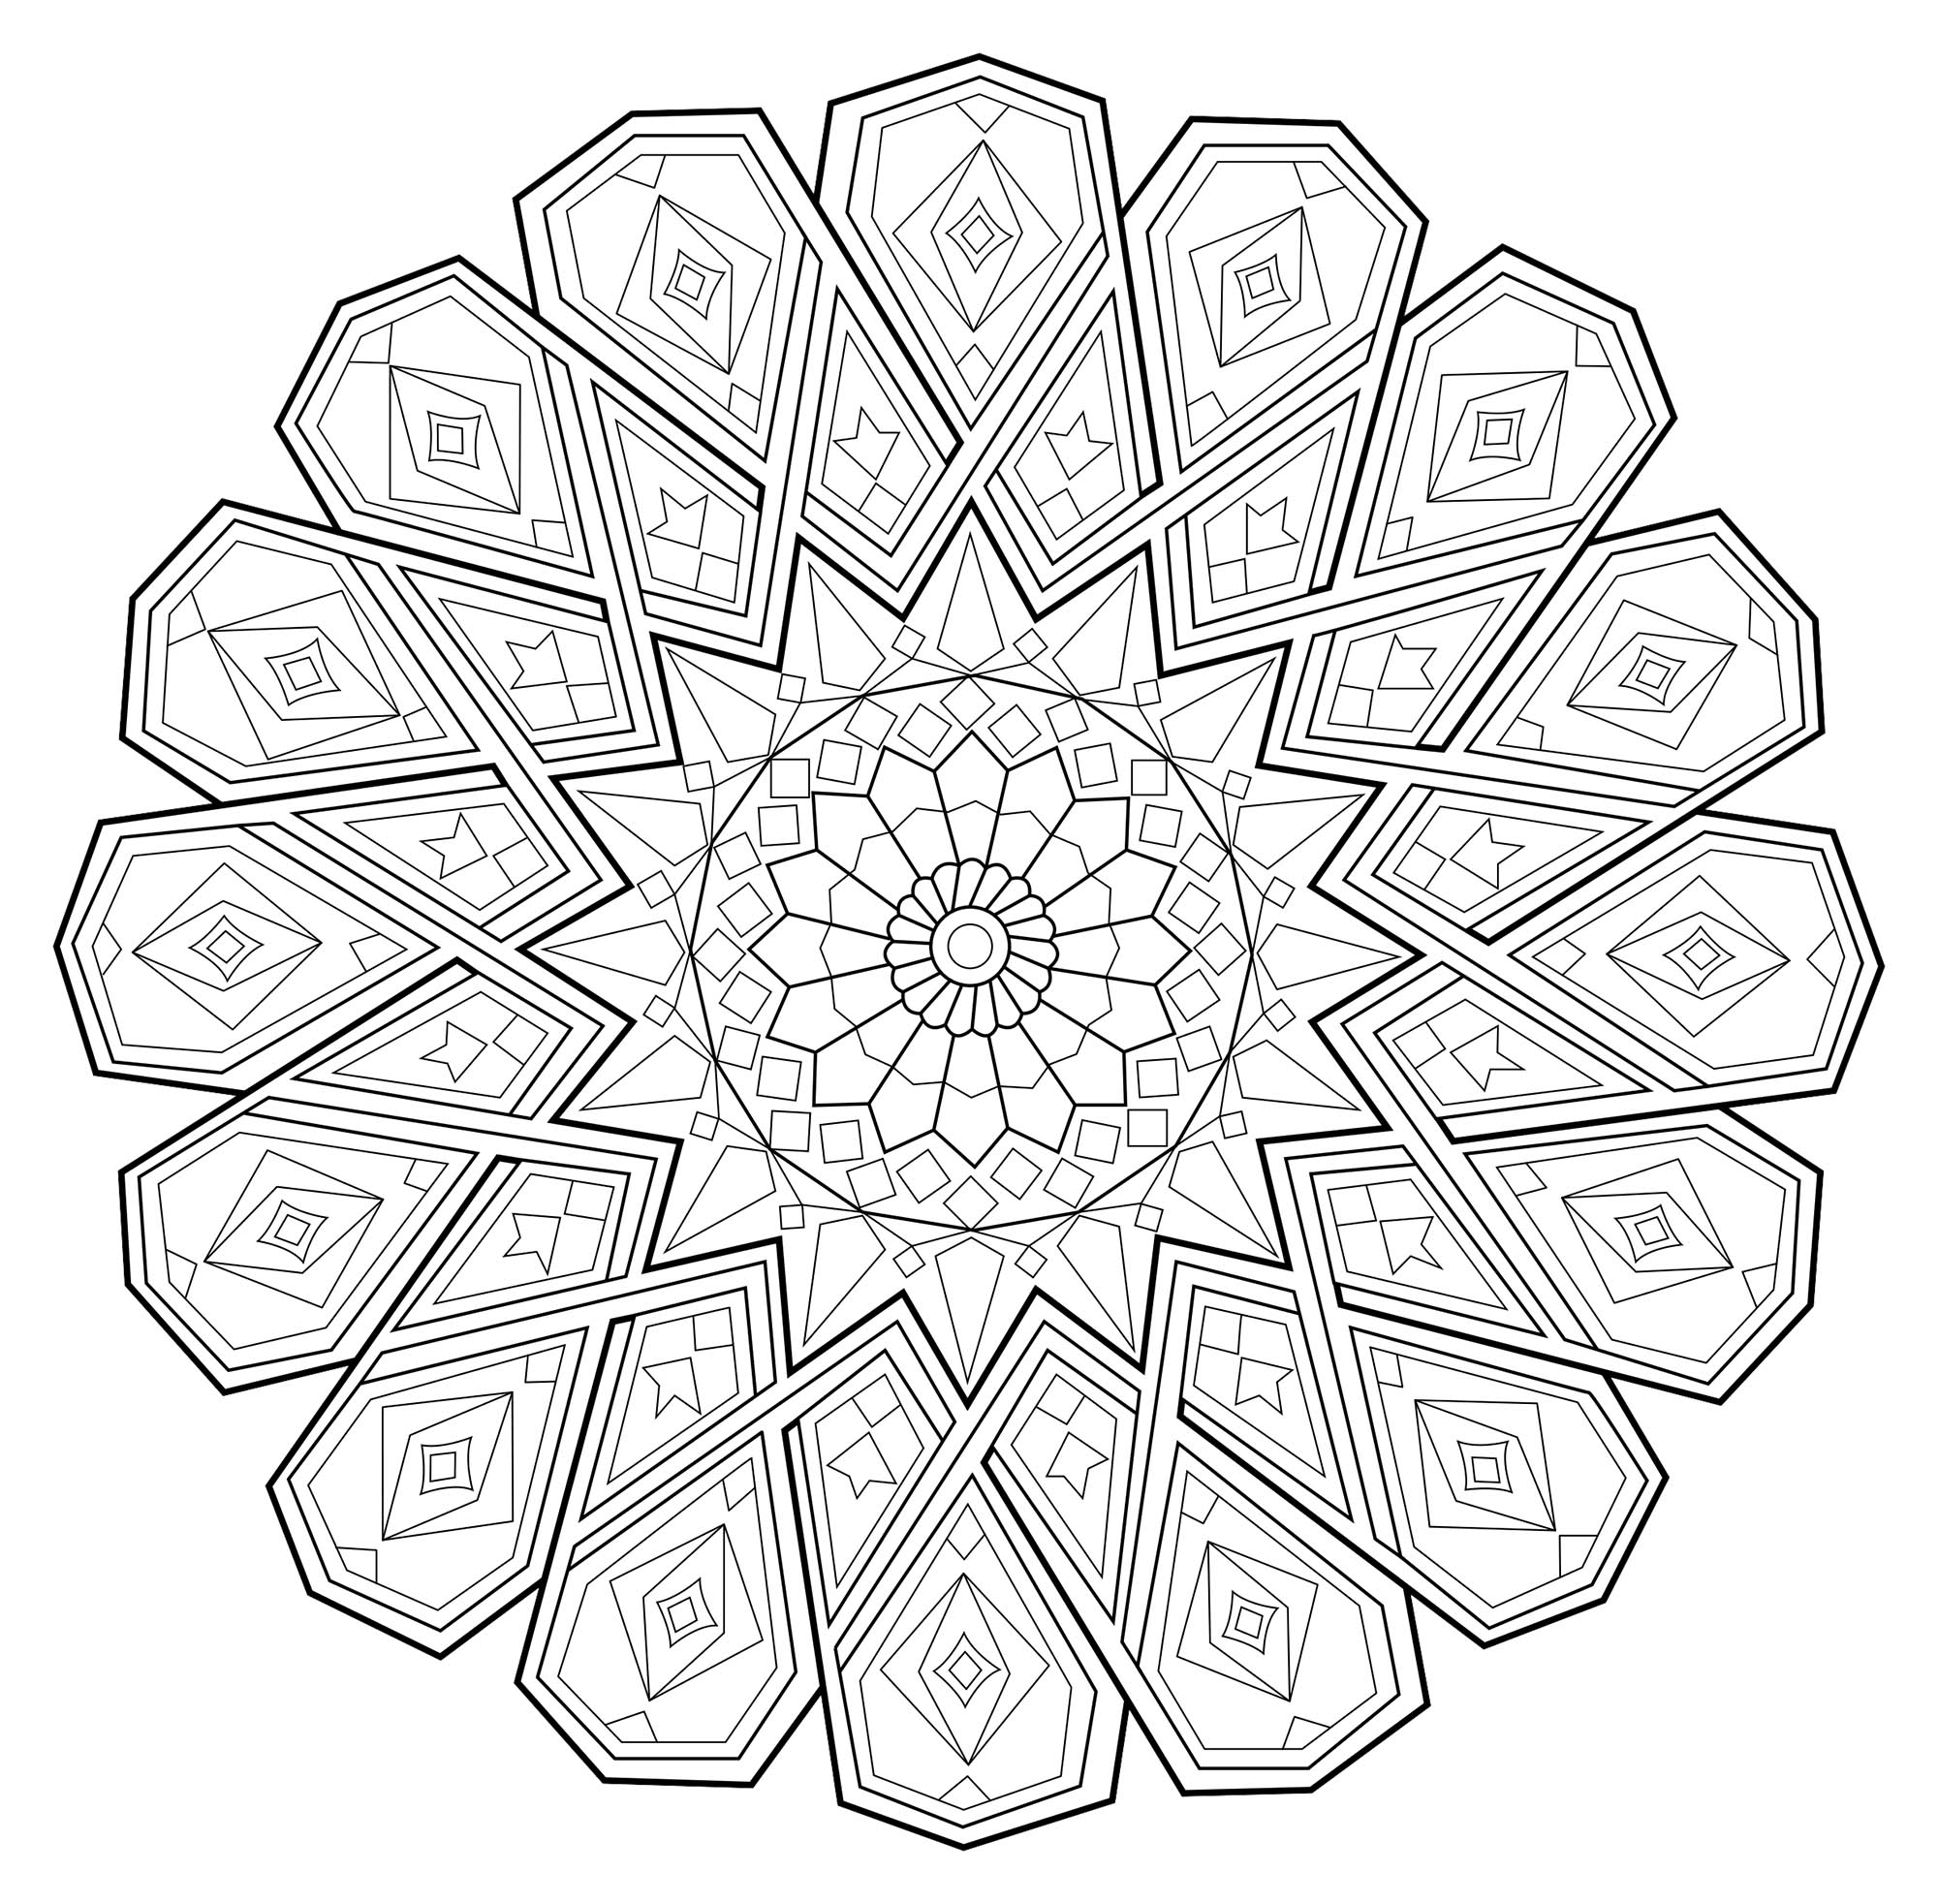 Mandala zen antistress - 7 - Mandalas - Coloriages difficiles pour adultes